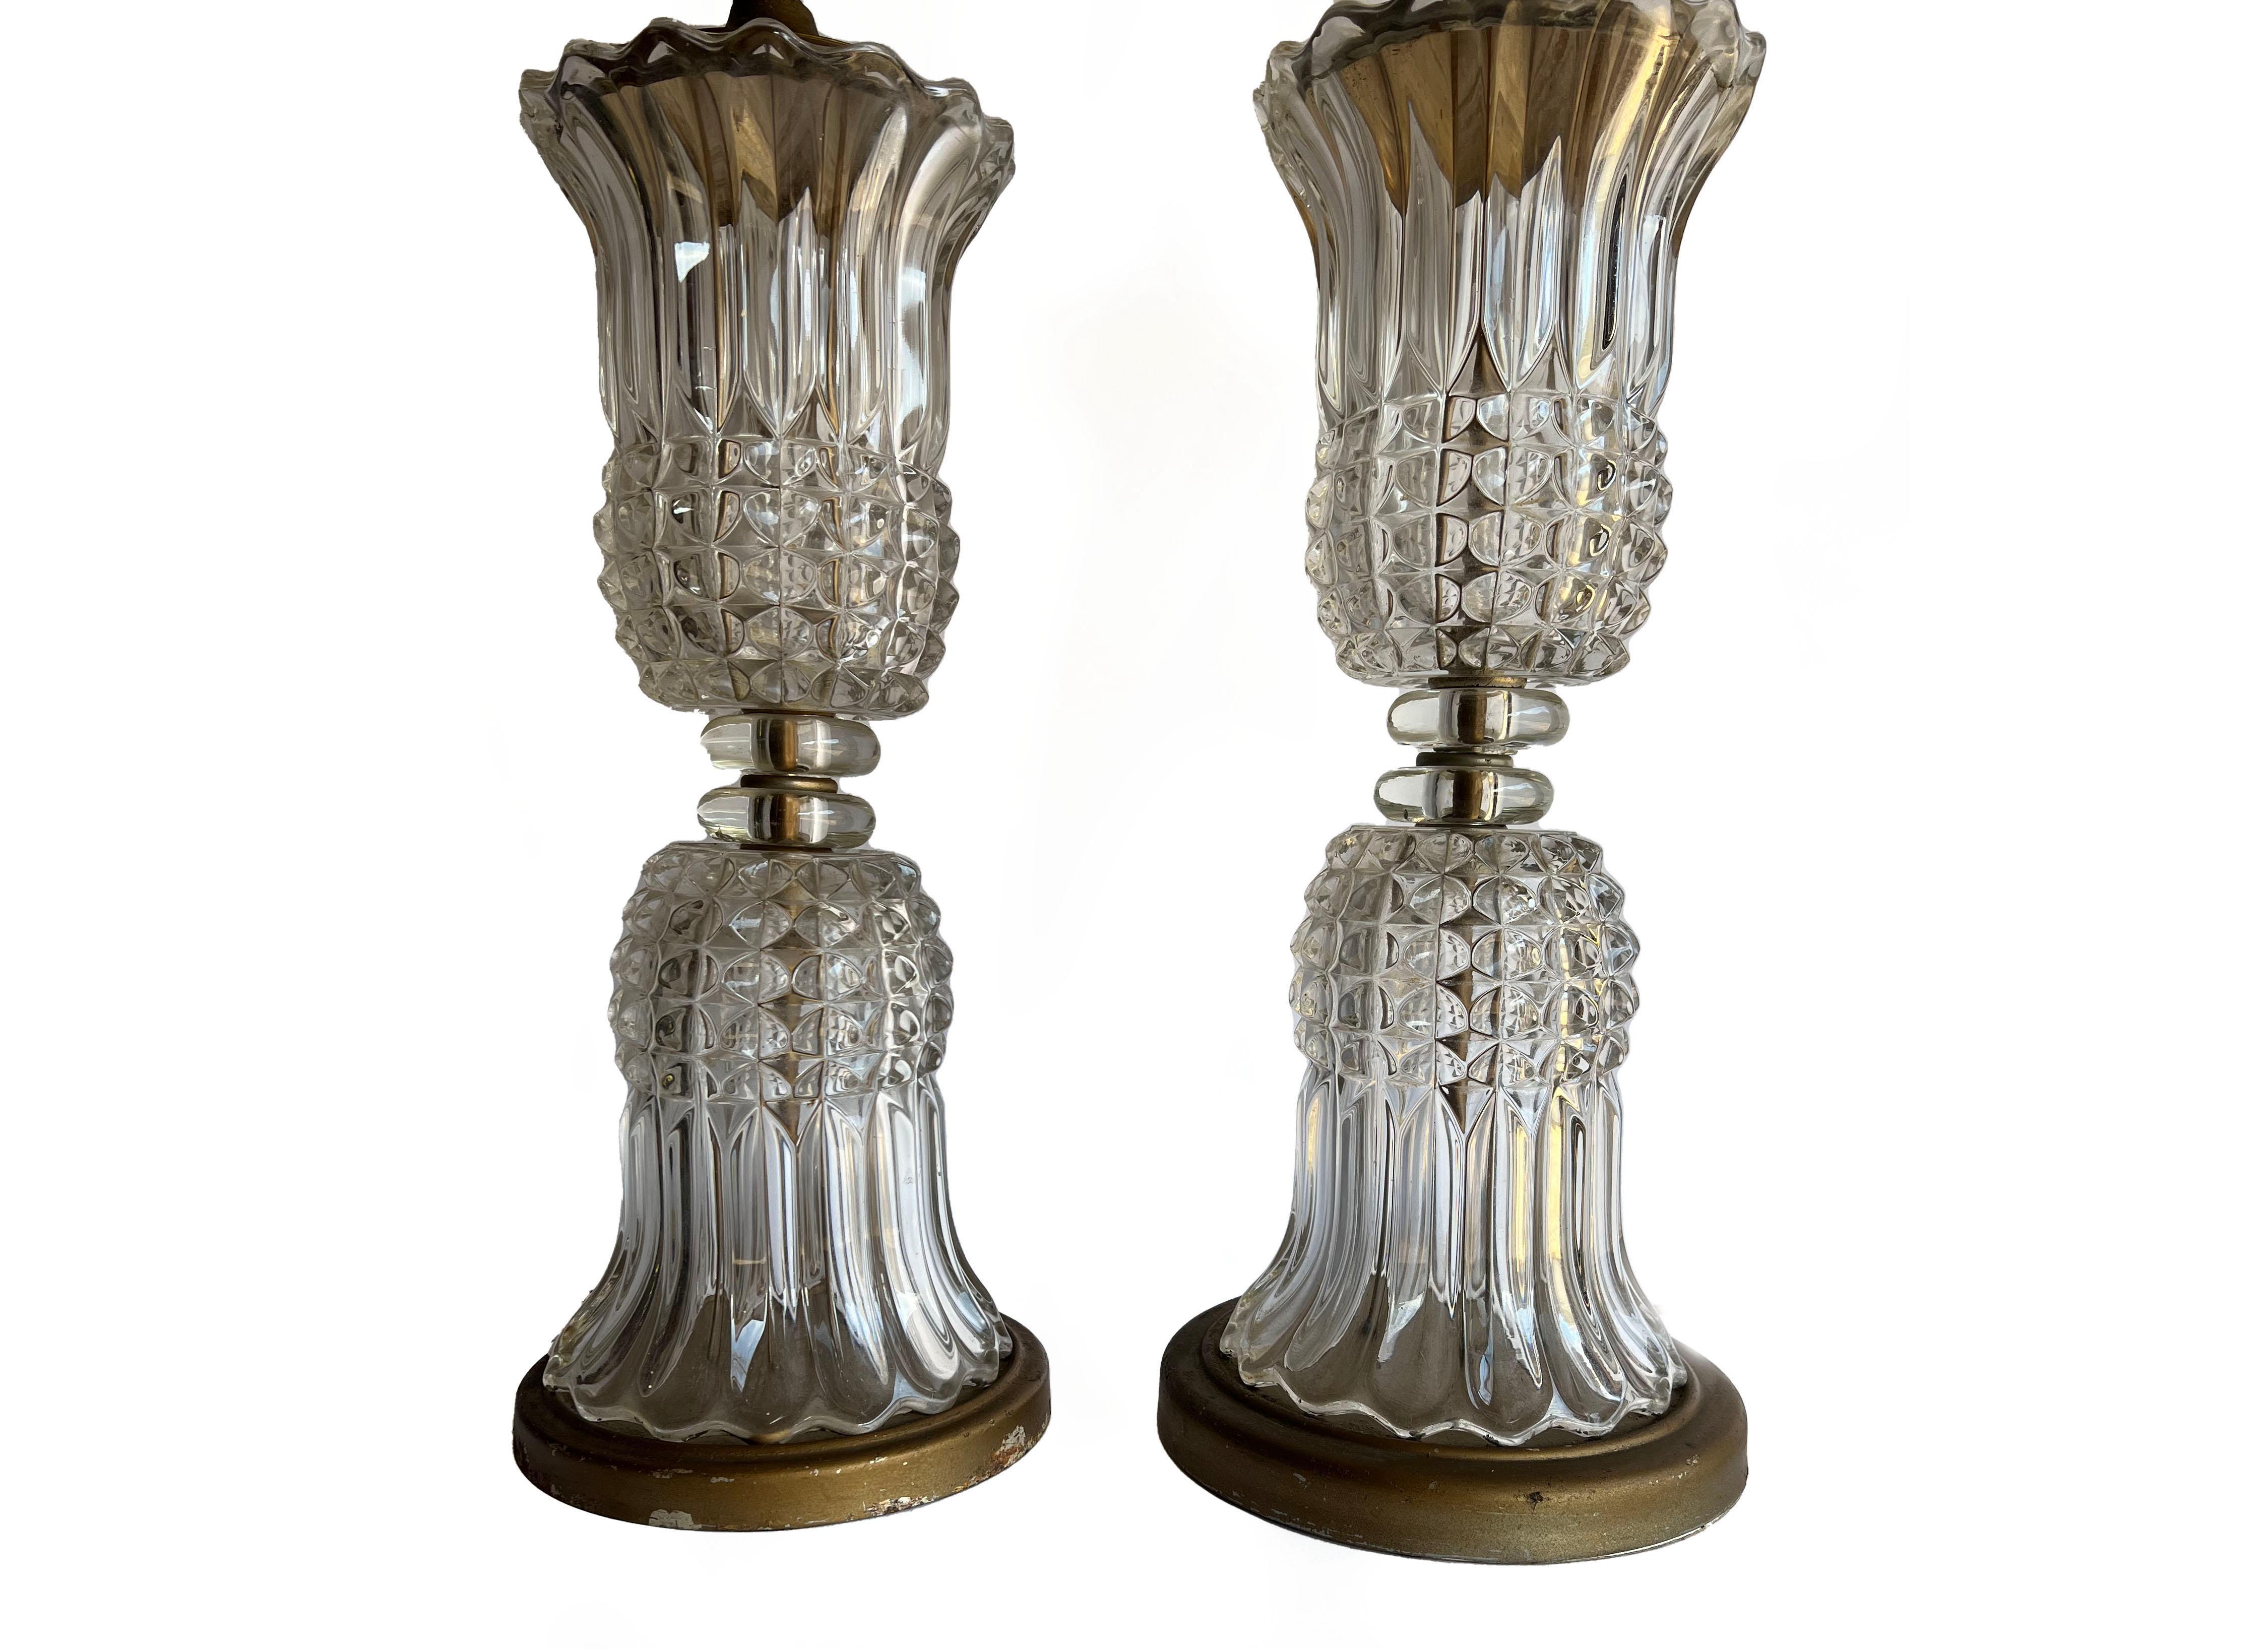 Zwei antike Lampen im Stil des französischen Empire oder Hollywood Regency aus geformtem Kristallglas. Mit einer transparenten, spiegelnden Vasenform aus gegossenem Kristall, die auf sich selbst gedreht ist. Das Glas ist diamantgeschliffen und